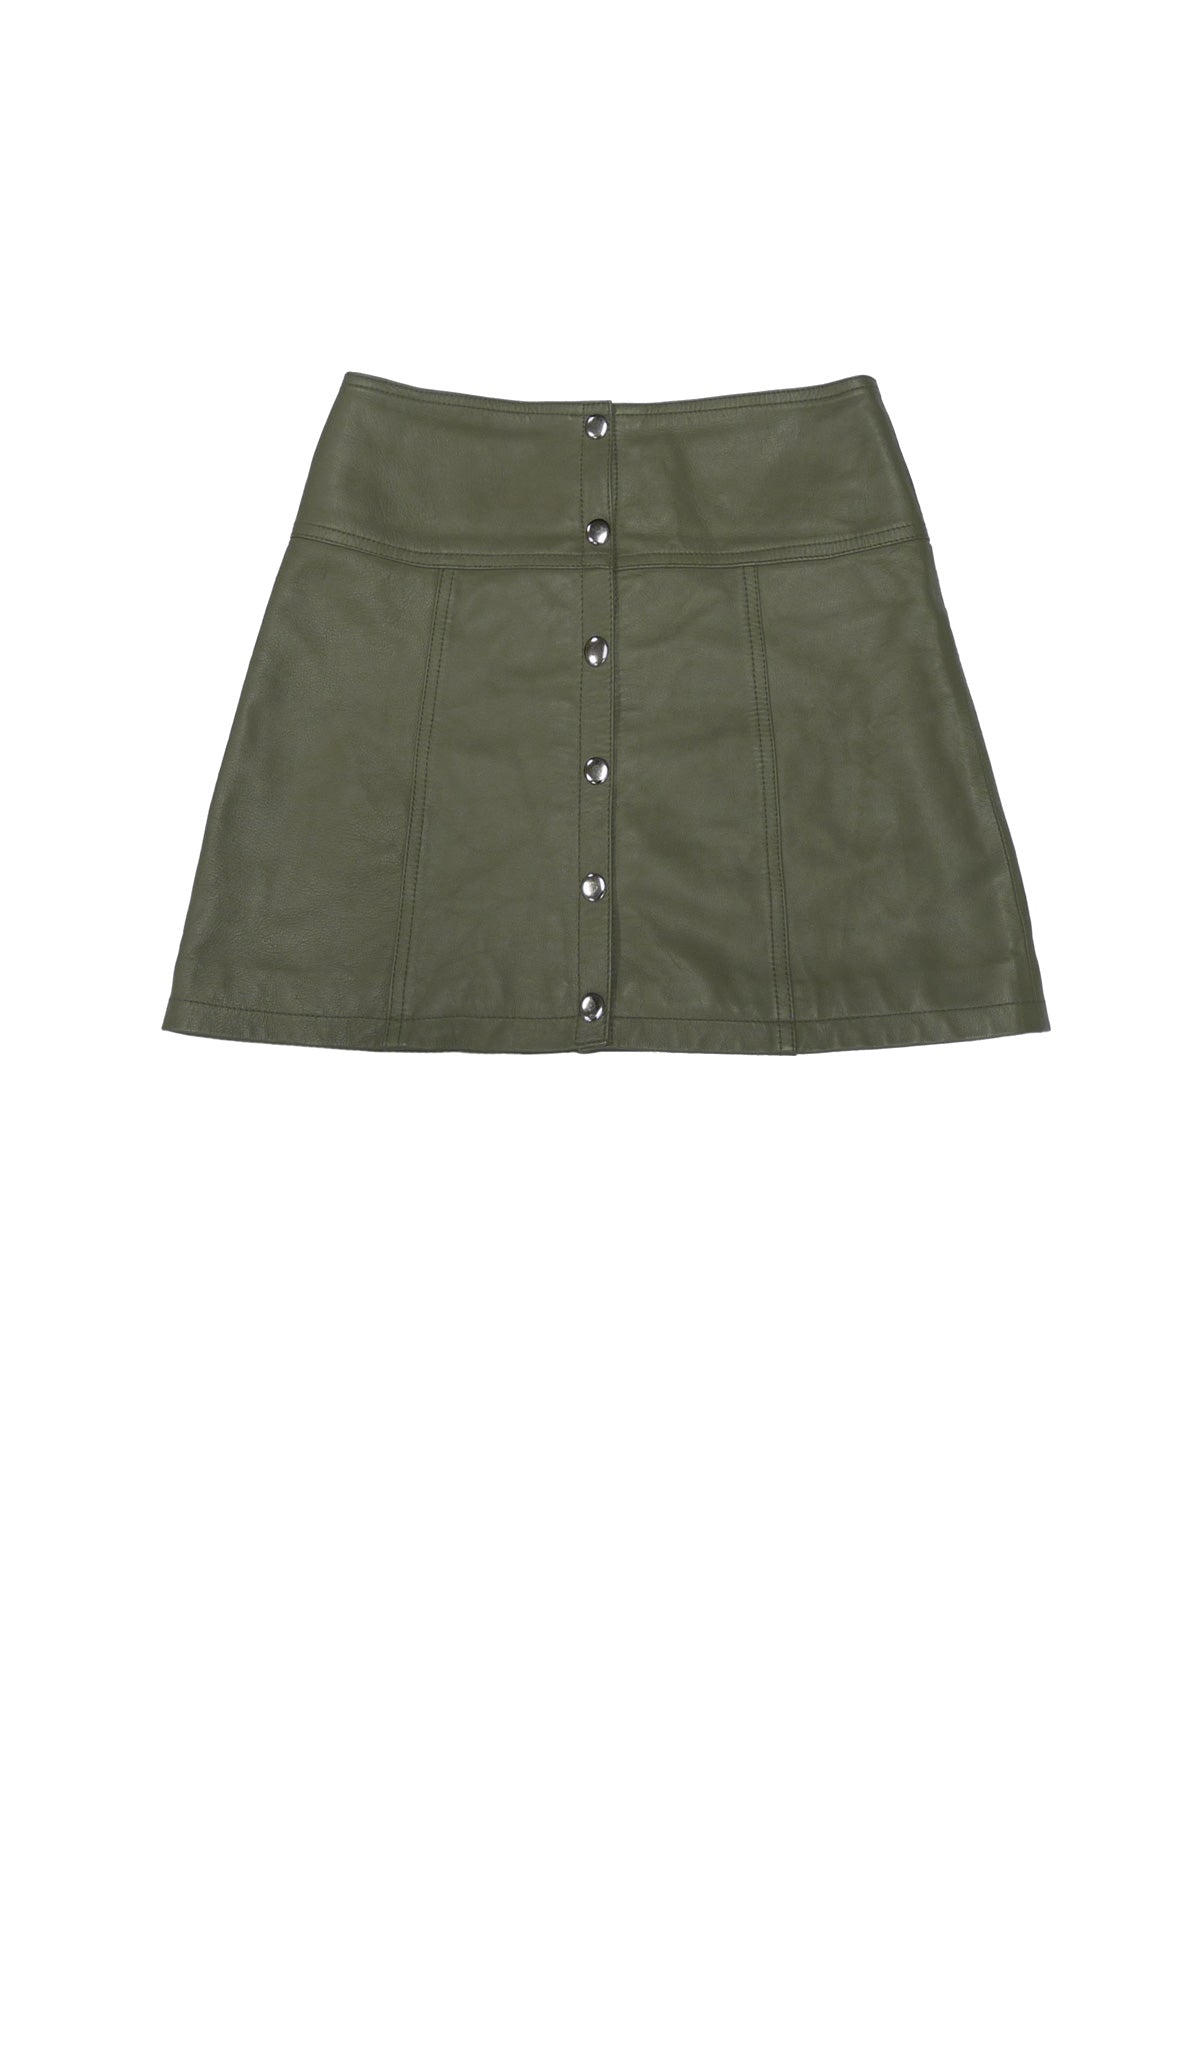 Studded Leather Mini Skirt